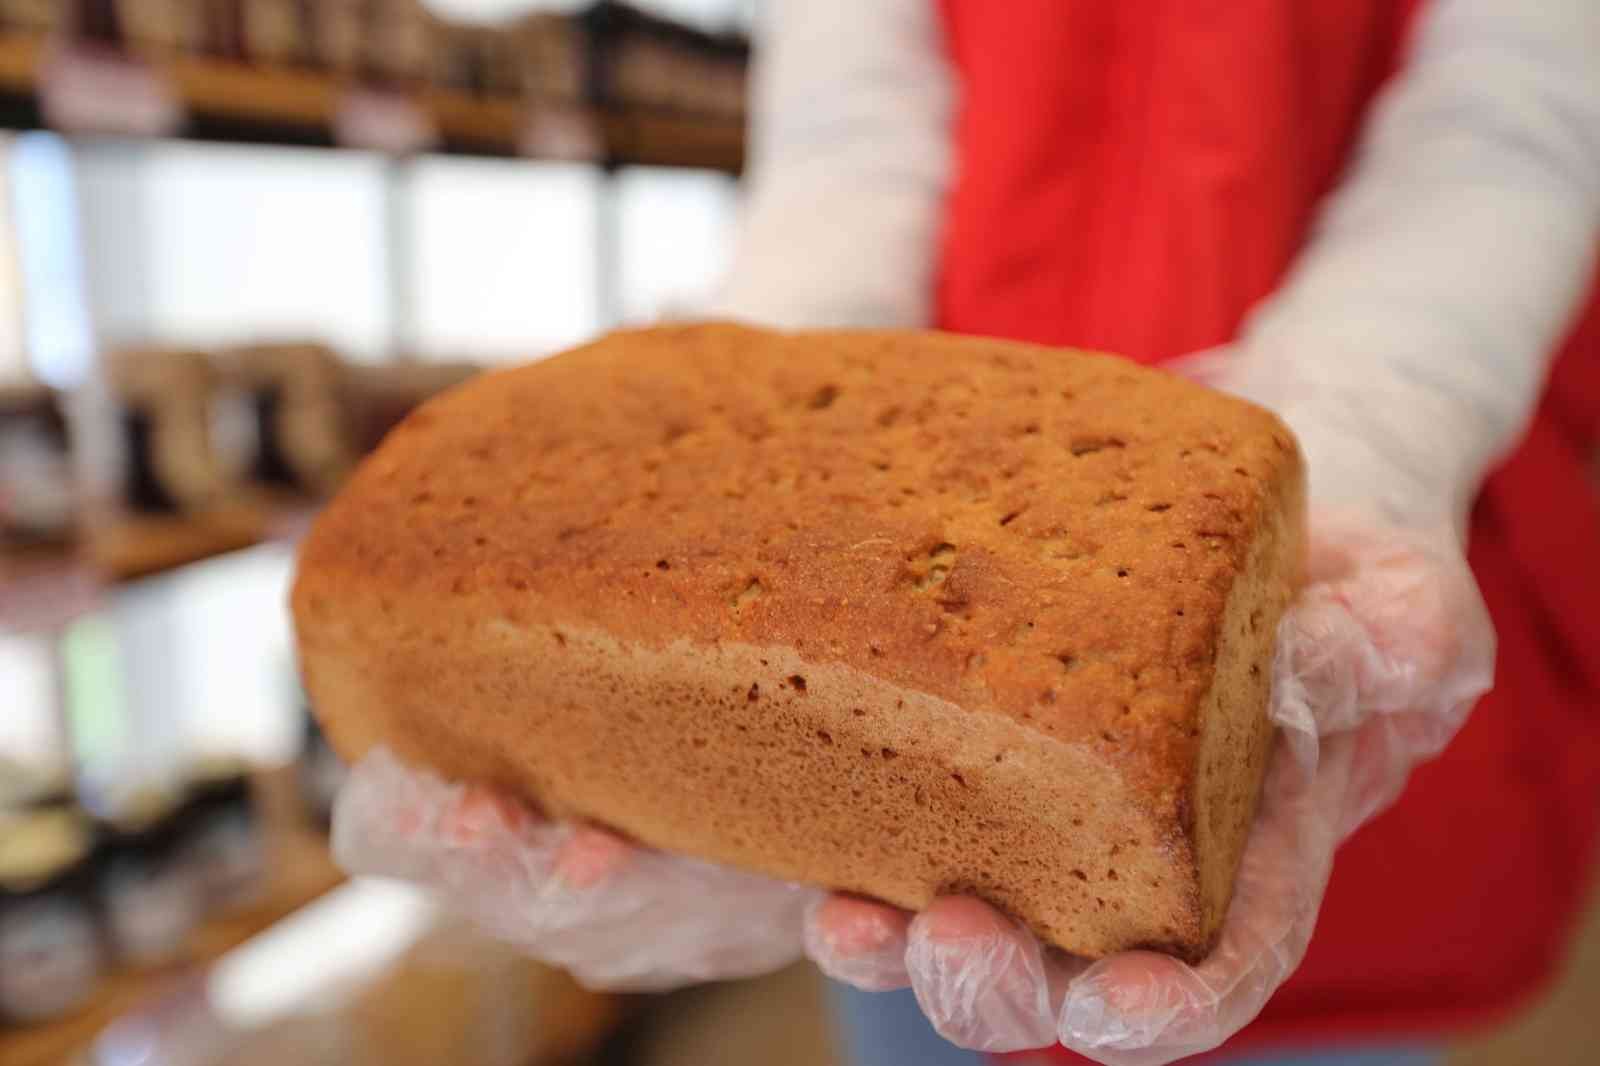 Efeler’in karakılçık ekmeği Efe Bakkal raflarında yerini aldı #aydin